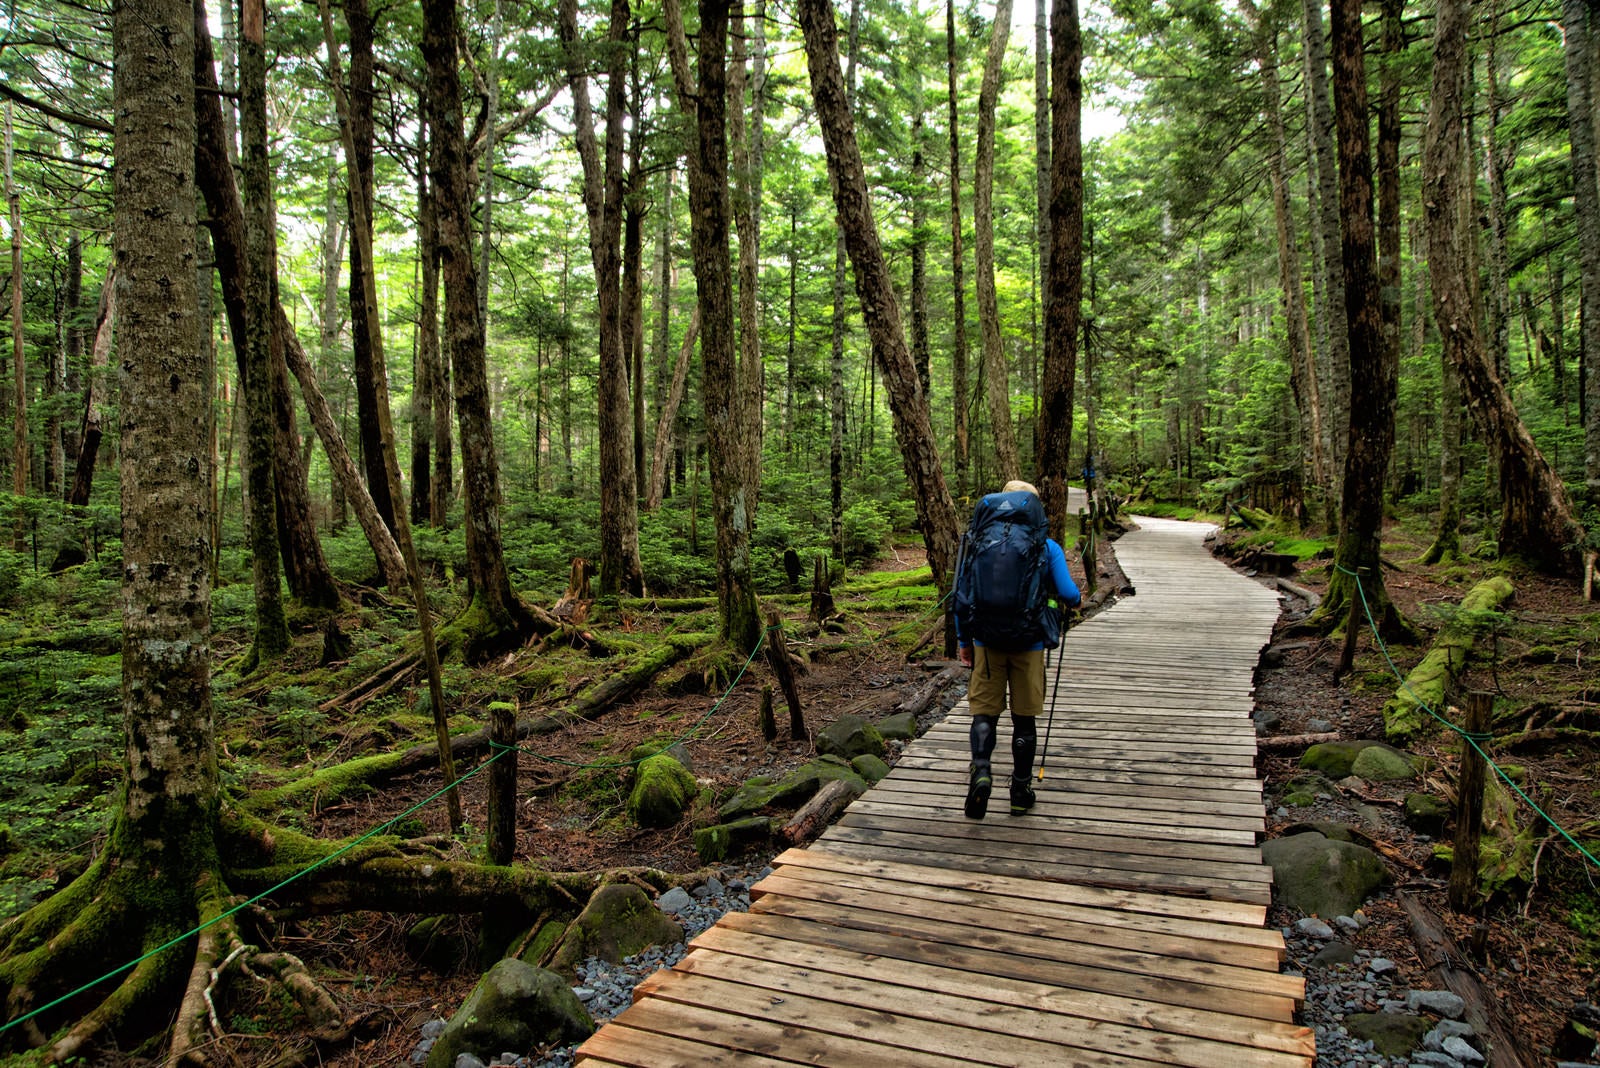 「整備された森の木道を散策する登山者」の写真